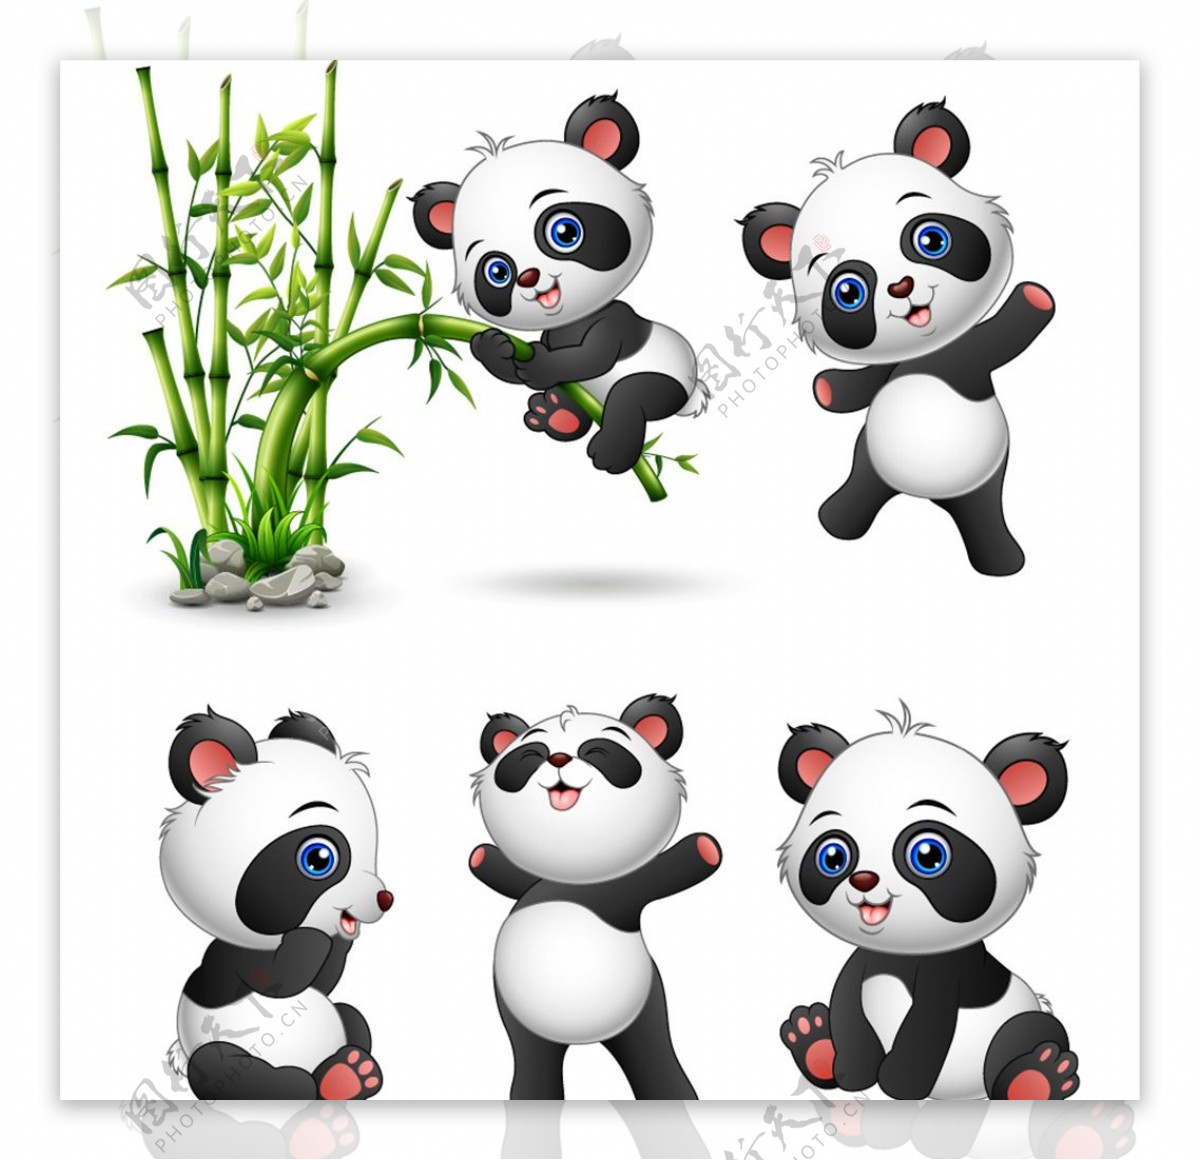 骑着竹子玩耍的可爱卡通大熊猫